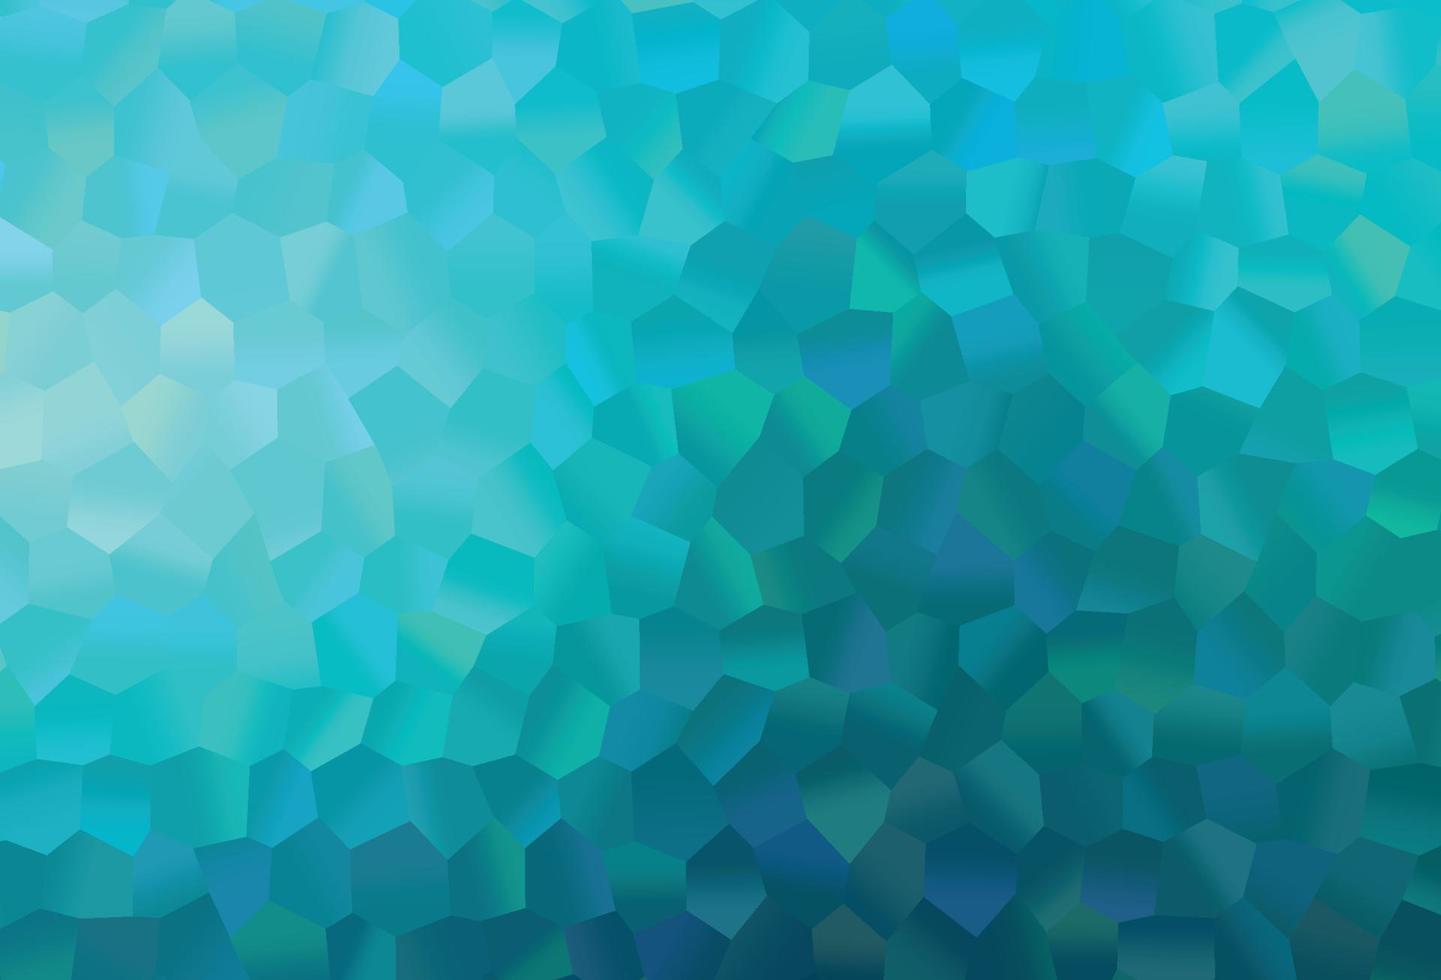 texture de vecteur bleu clair avec des hexagones colorés.